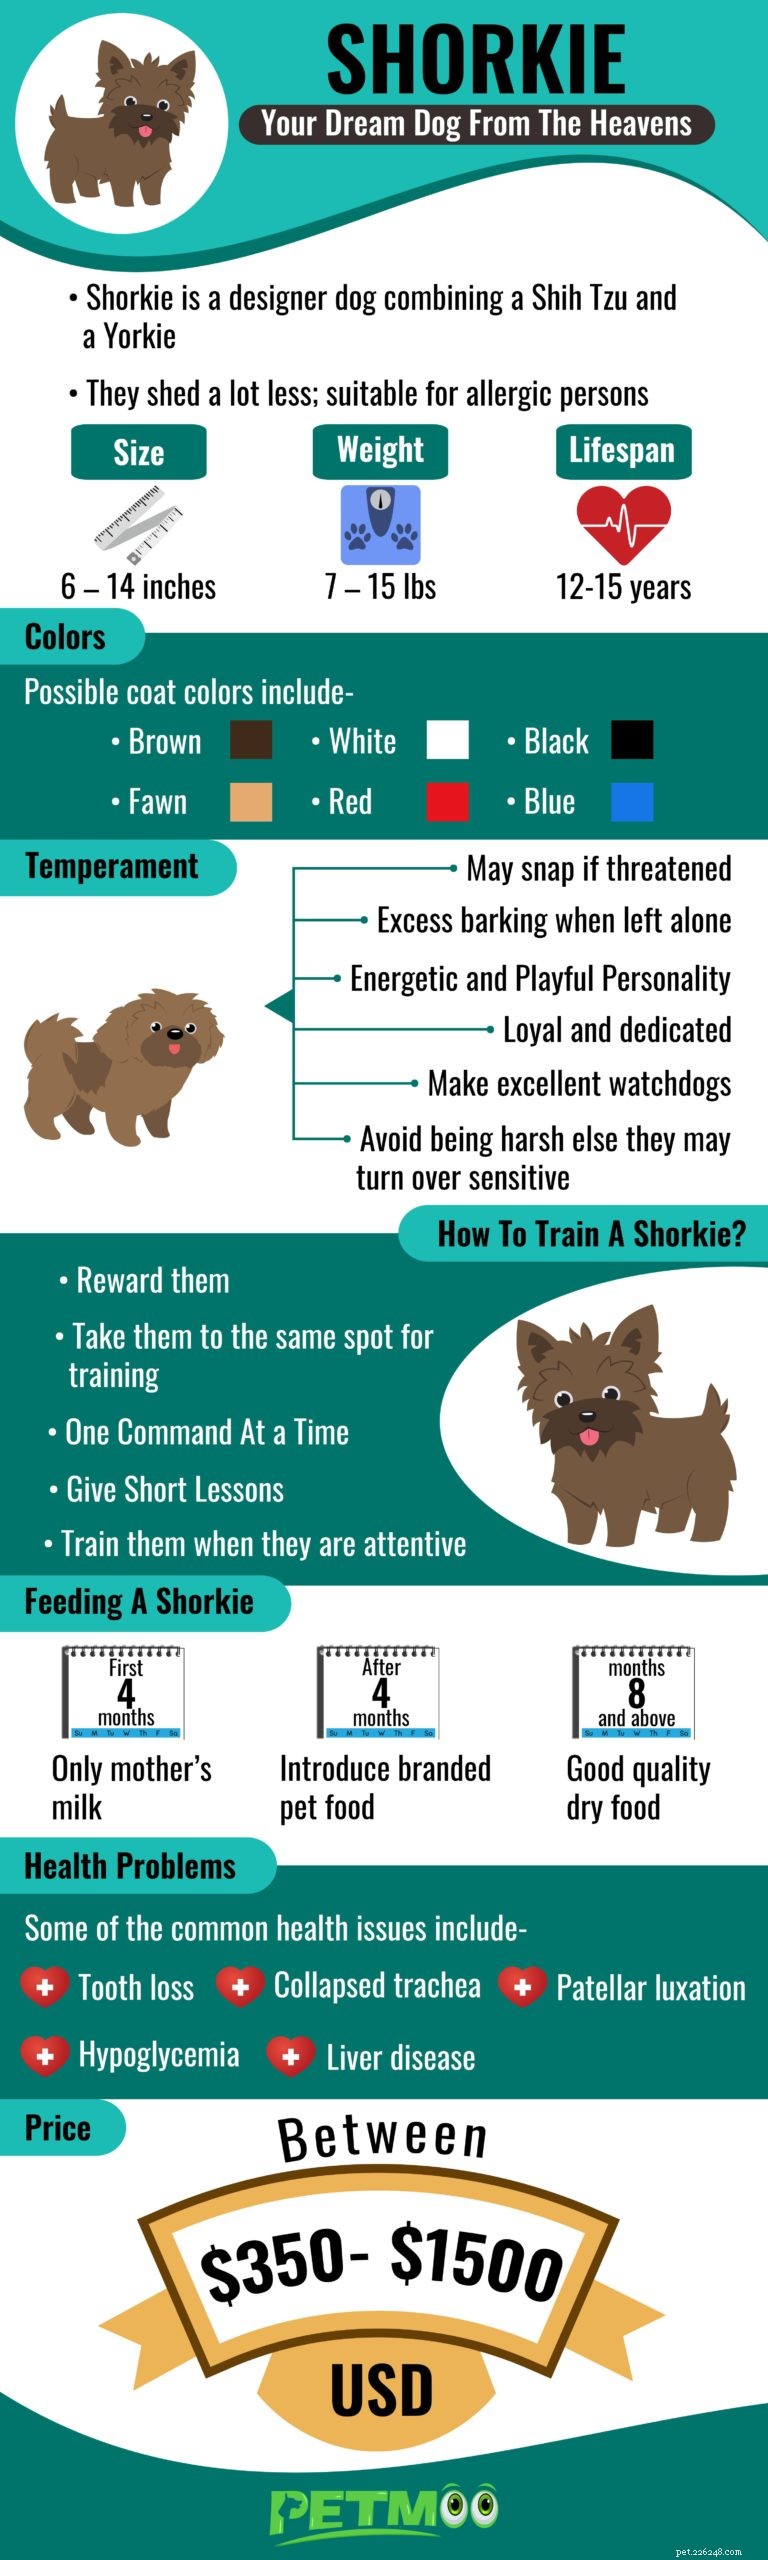 Shorkie – Fatos sobre a mistura de Shih Tzu e Yorkshire Terrier